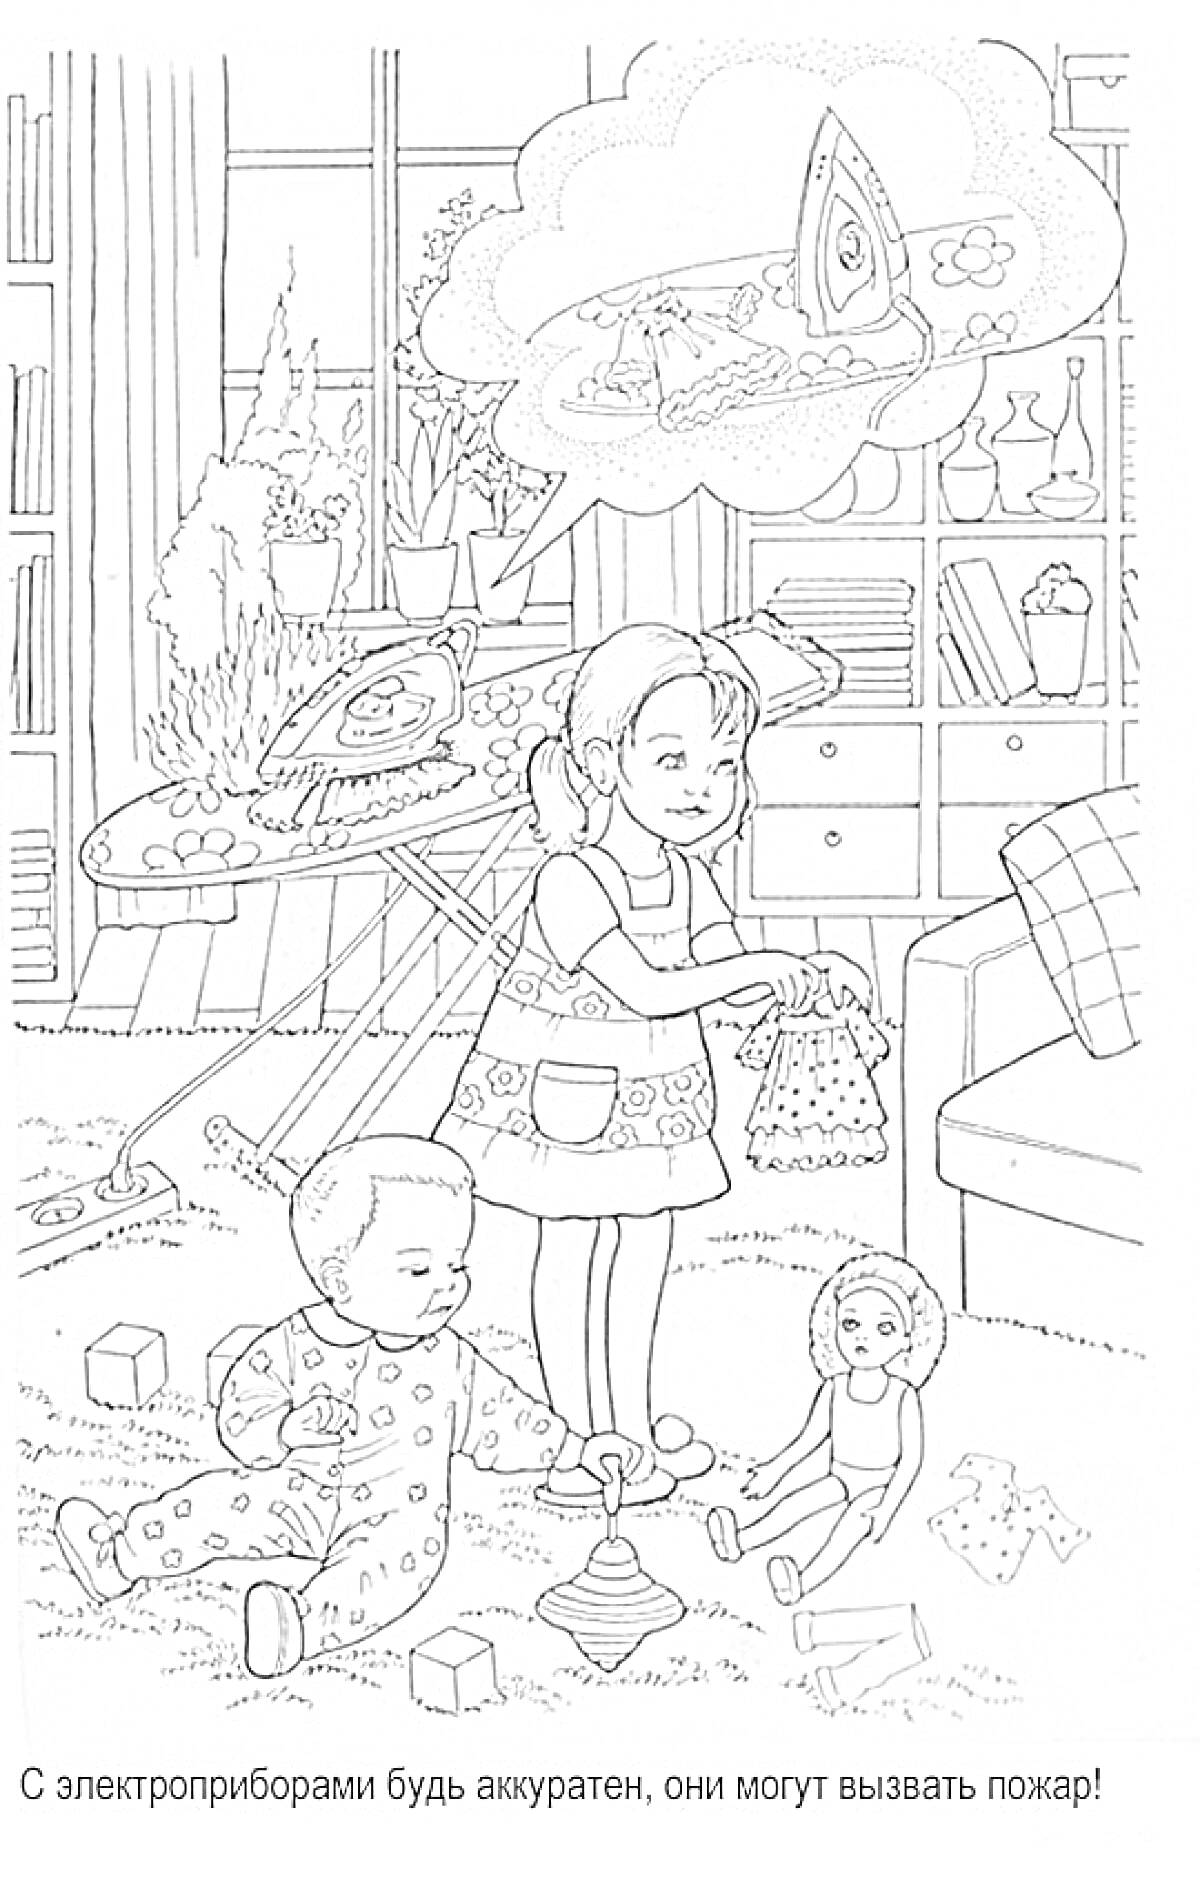 Девочка с игрушечной уткой, мальчик с пирамидкой, кукла, утюг на гладильной доске, игрушки, комод, шкаф с книгами и цветами, окно с занавесками.